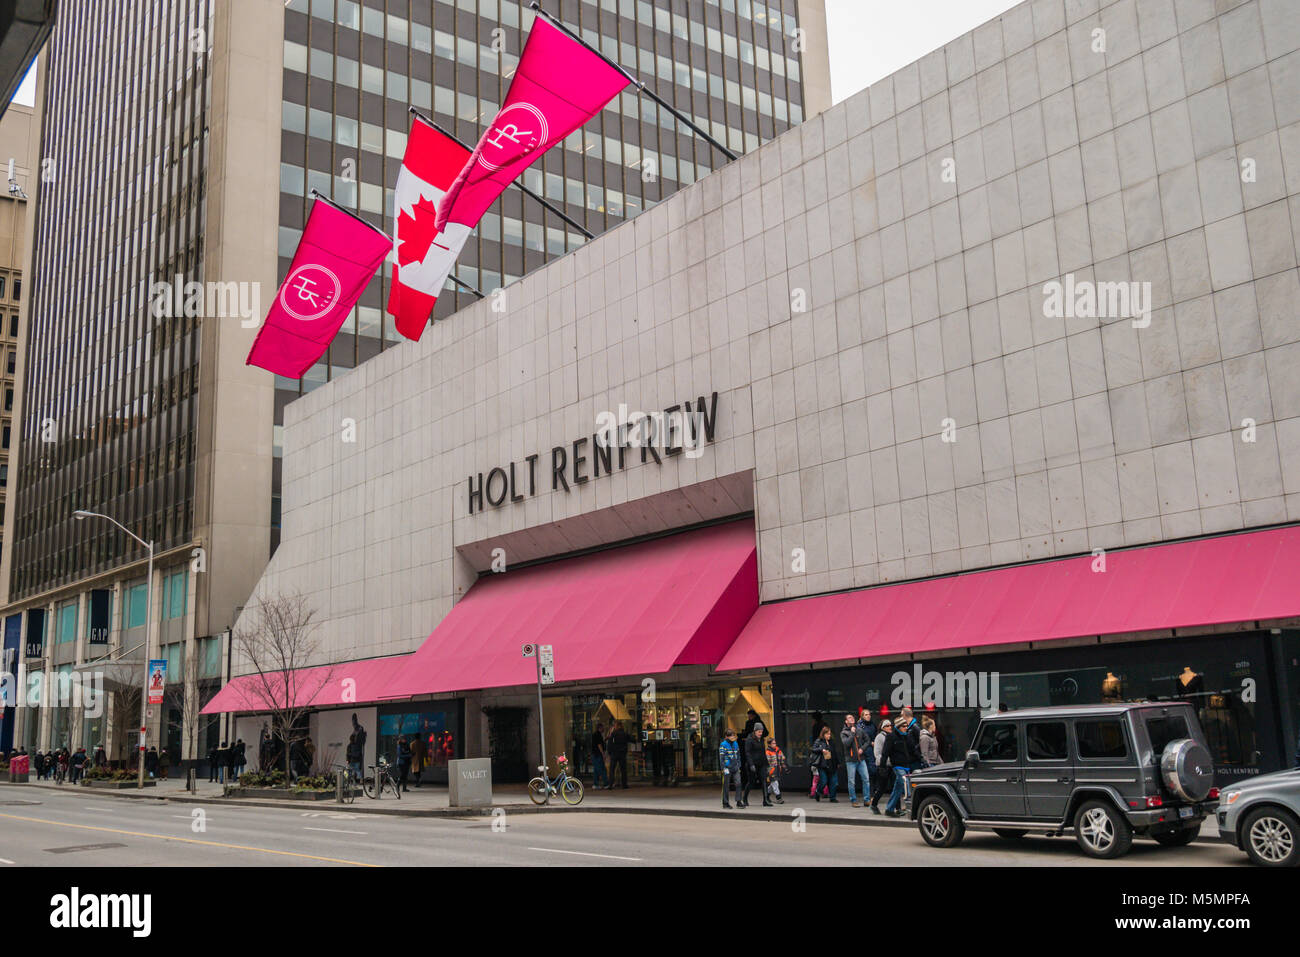 Louis Vuitton Toronto Bloor Street store, Canada